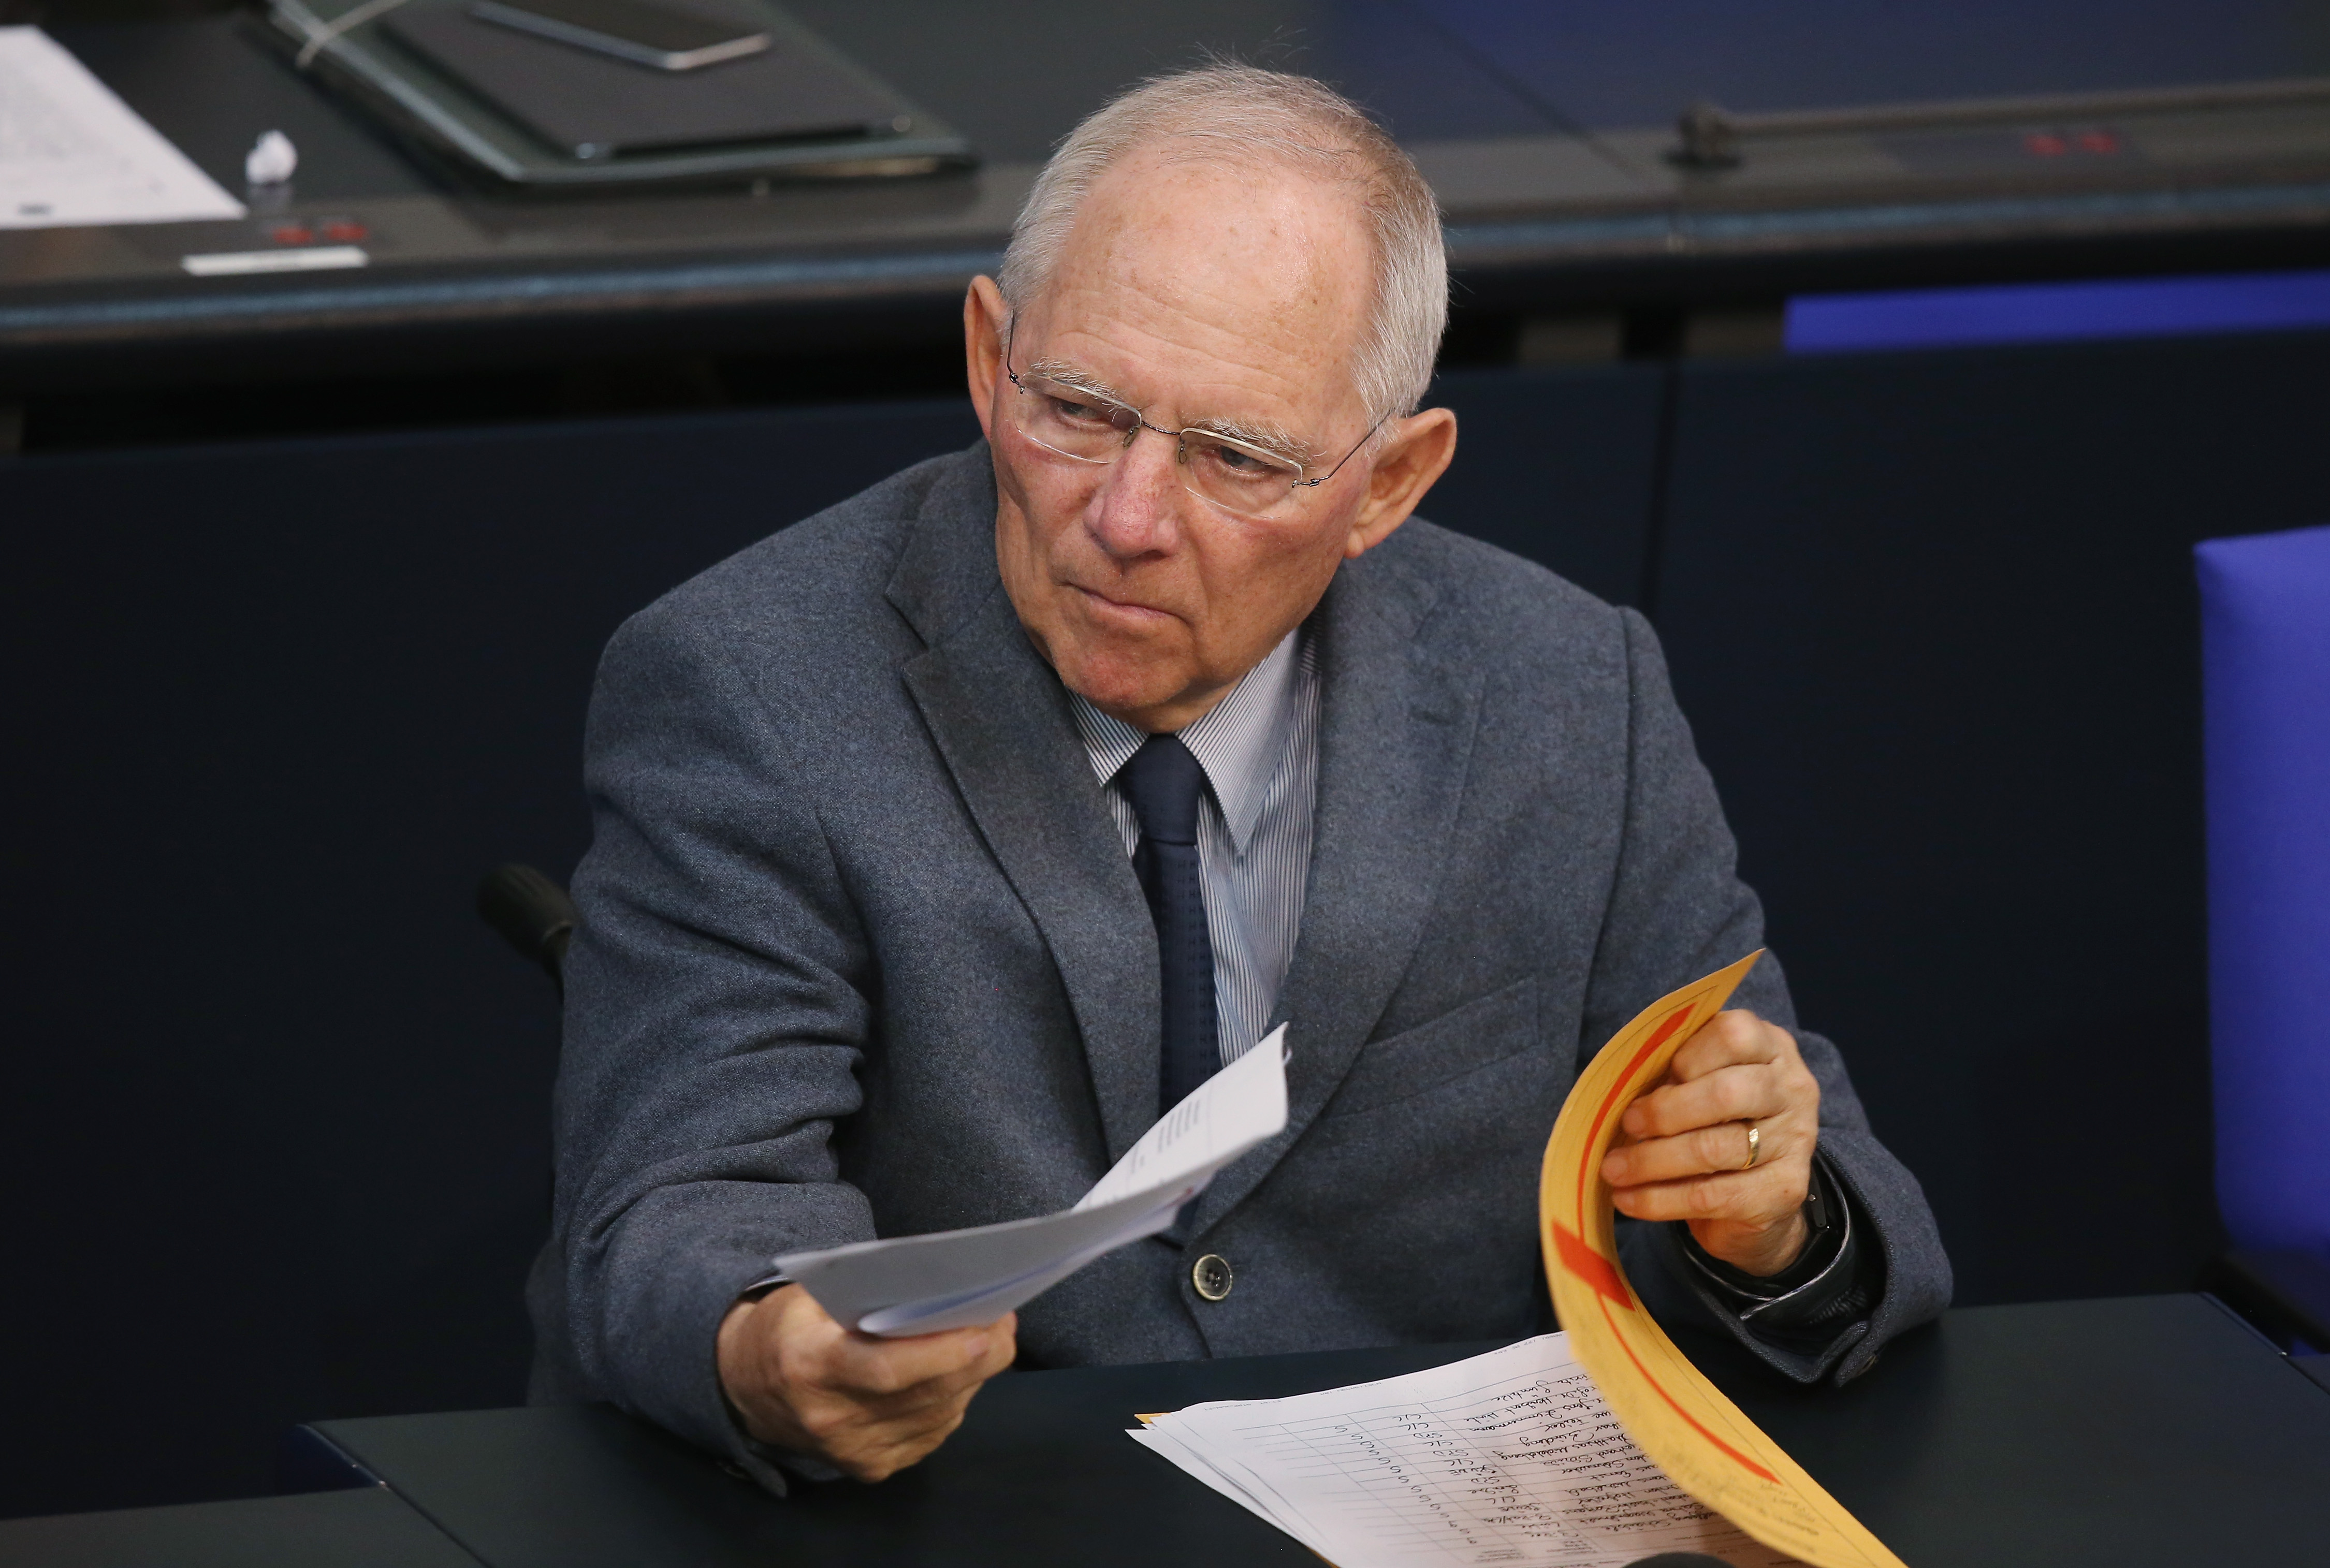 Anti-Korruptions-Organisation kritisiert: Schäuble erschwert „effektive Kontrolle von Korruption erheblich“